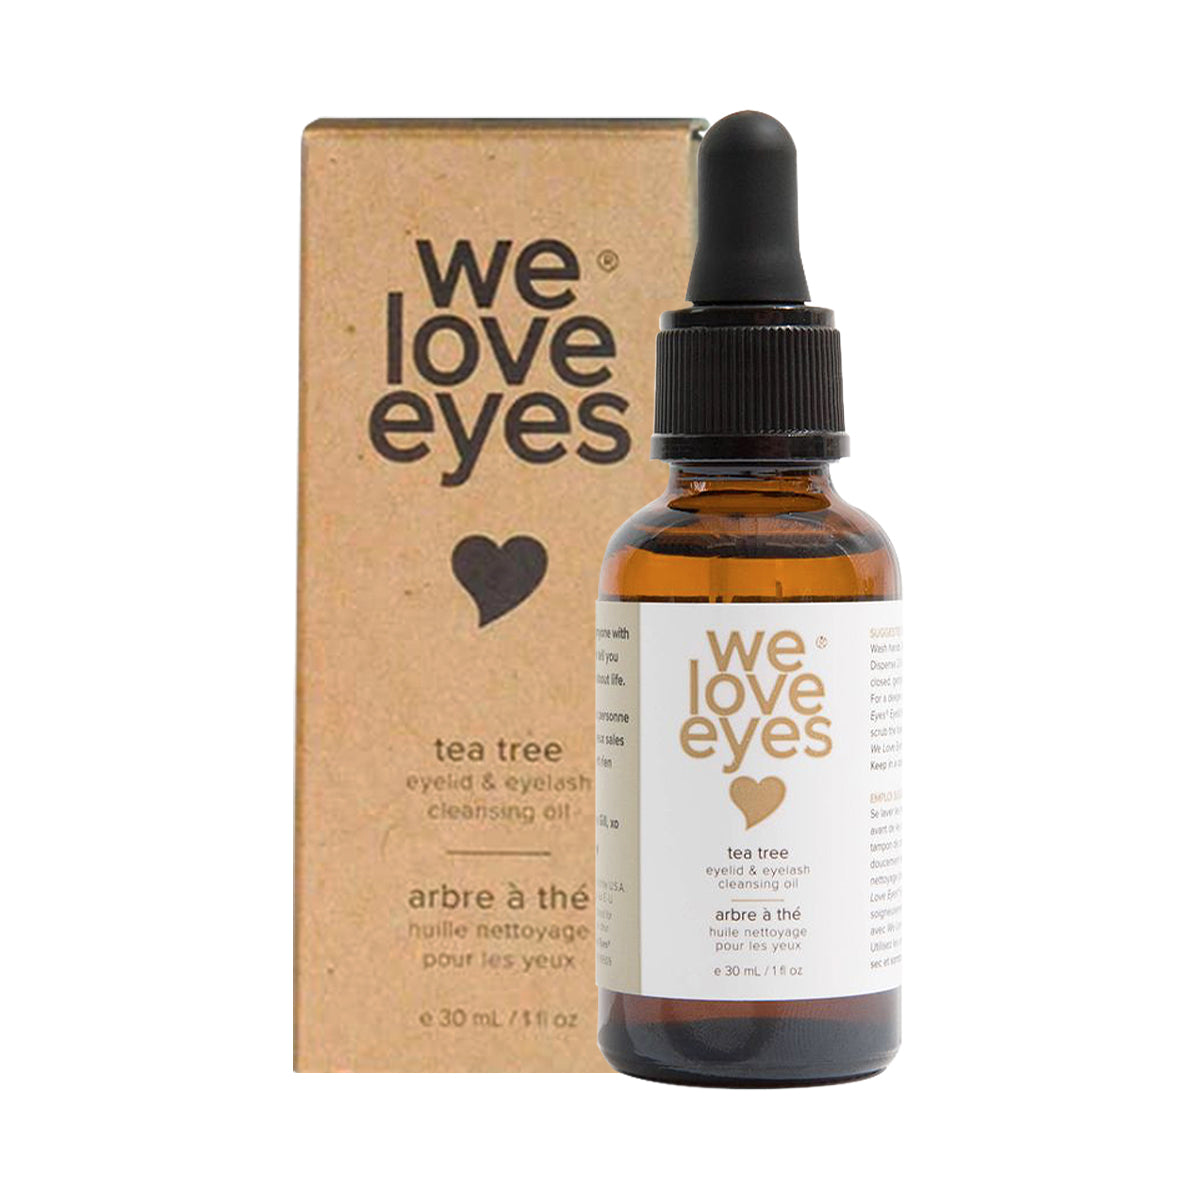 We Love Eyes- All Natural Tea Tree Eyelid Cleansing Oil - 30ml